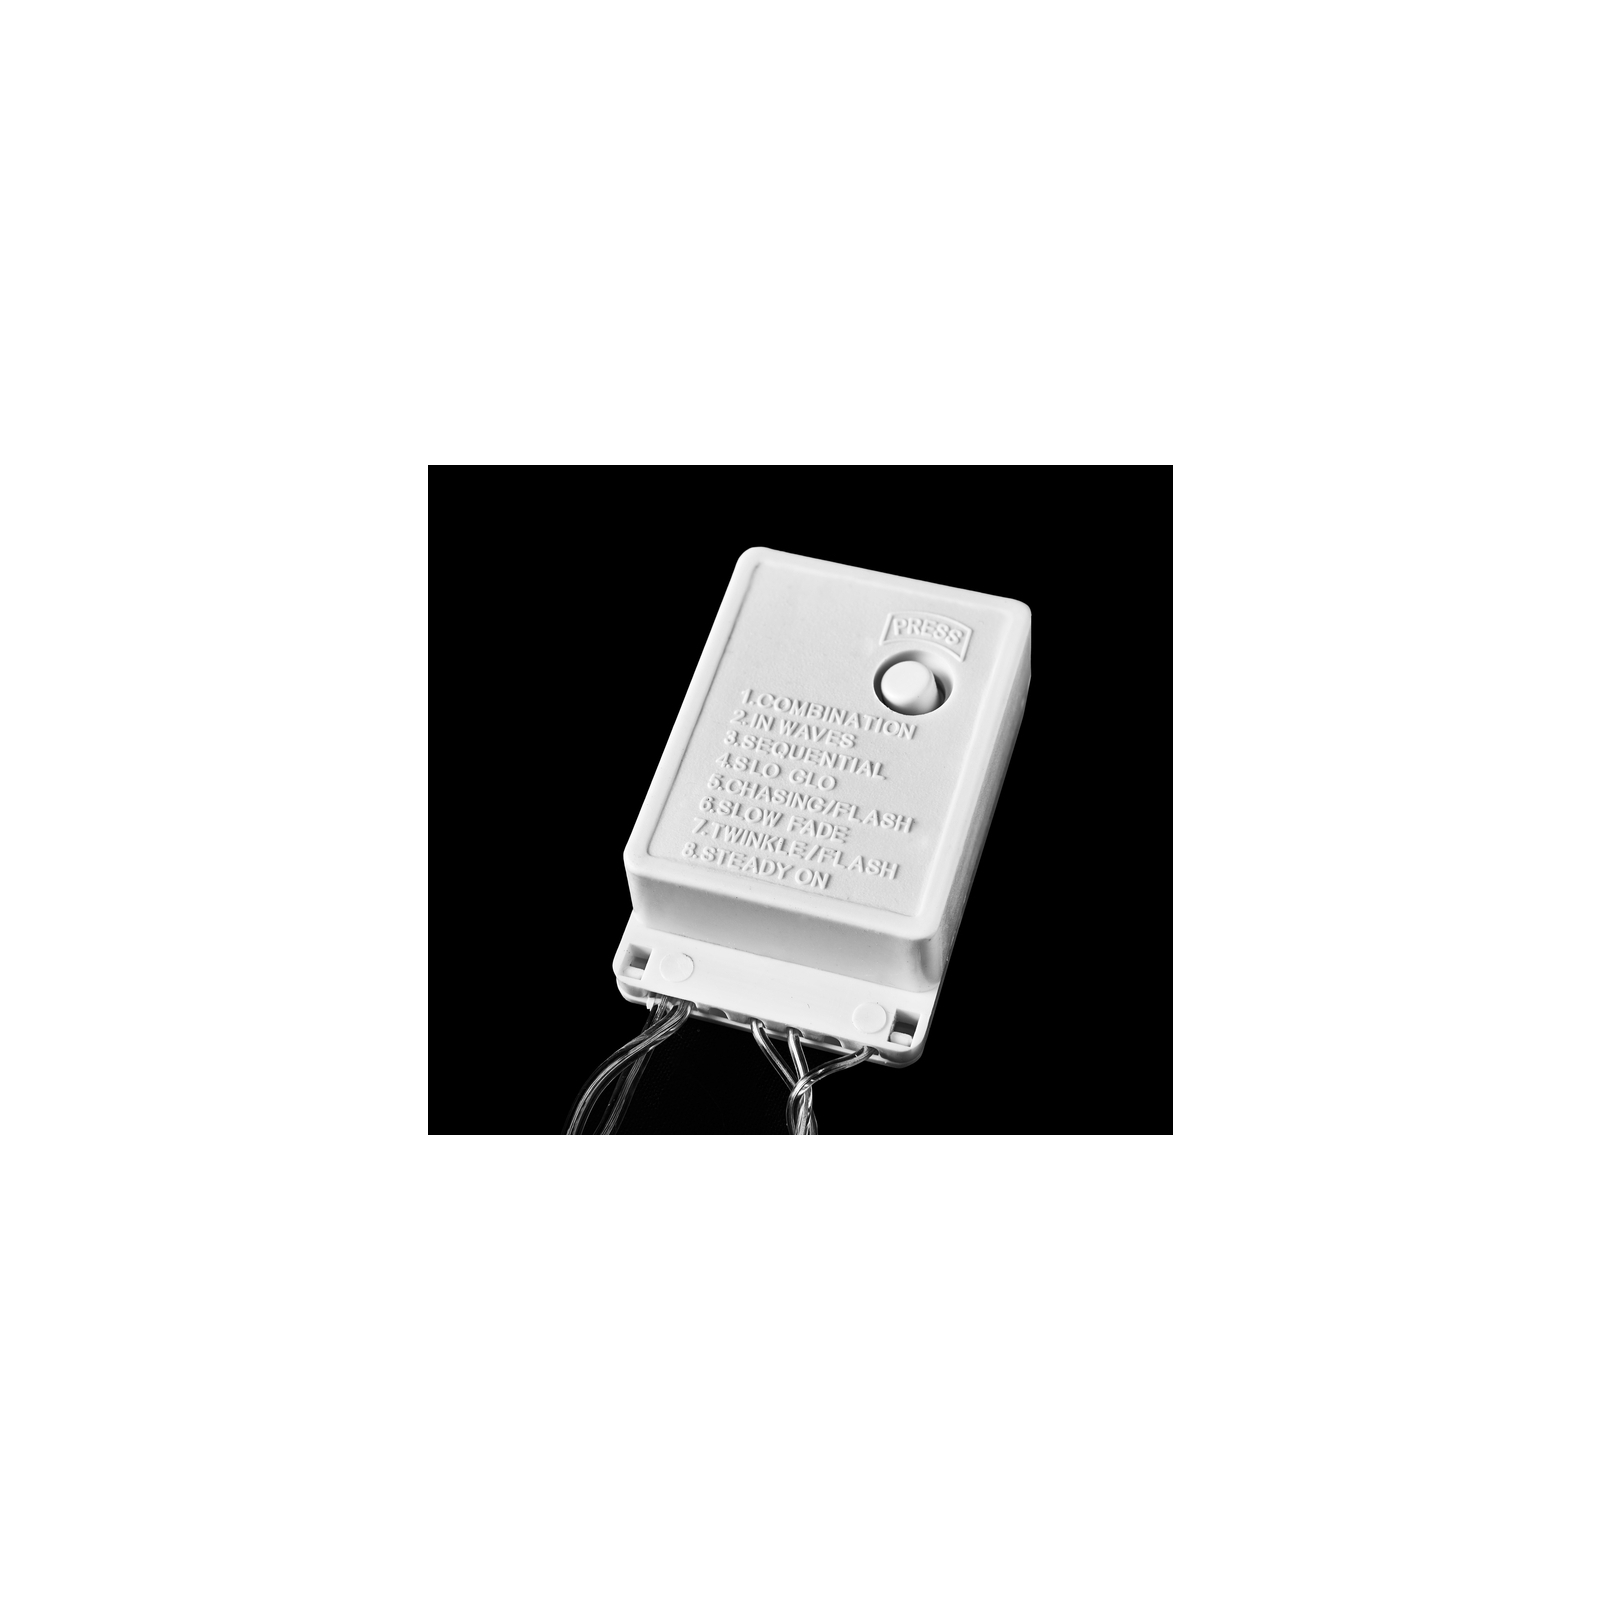 Гирлянда Delux STRING С 100 LED 5m Теплый белый/прозрачный IP20 (90009495) изображение 4